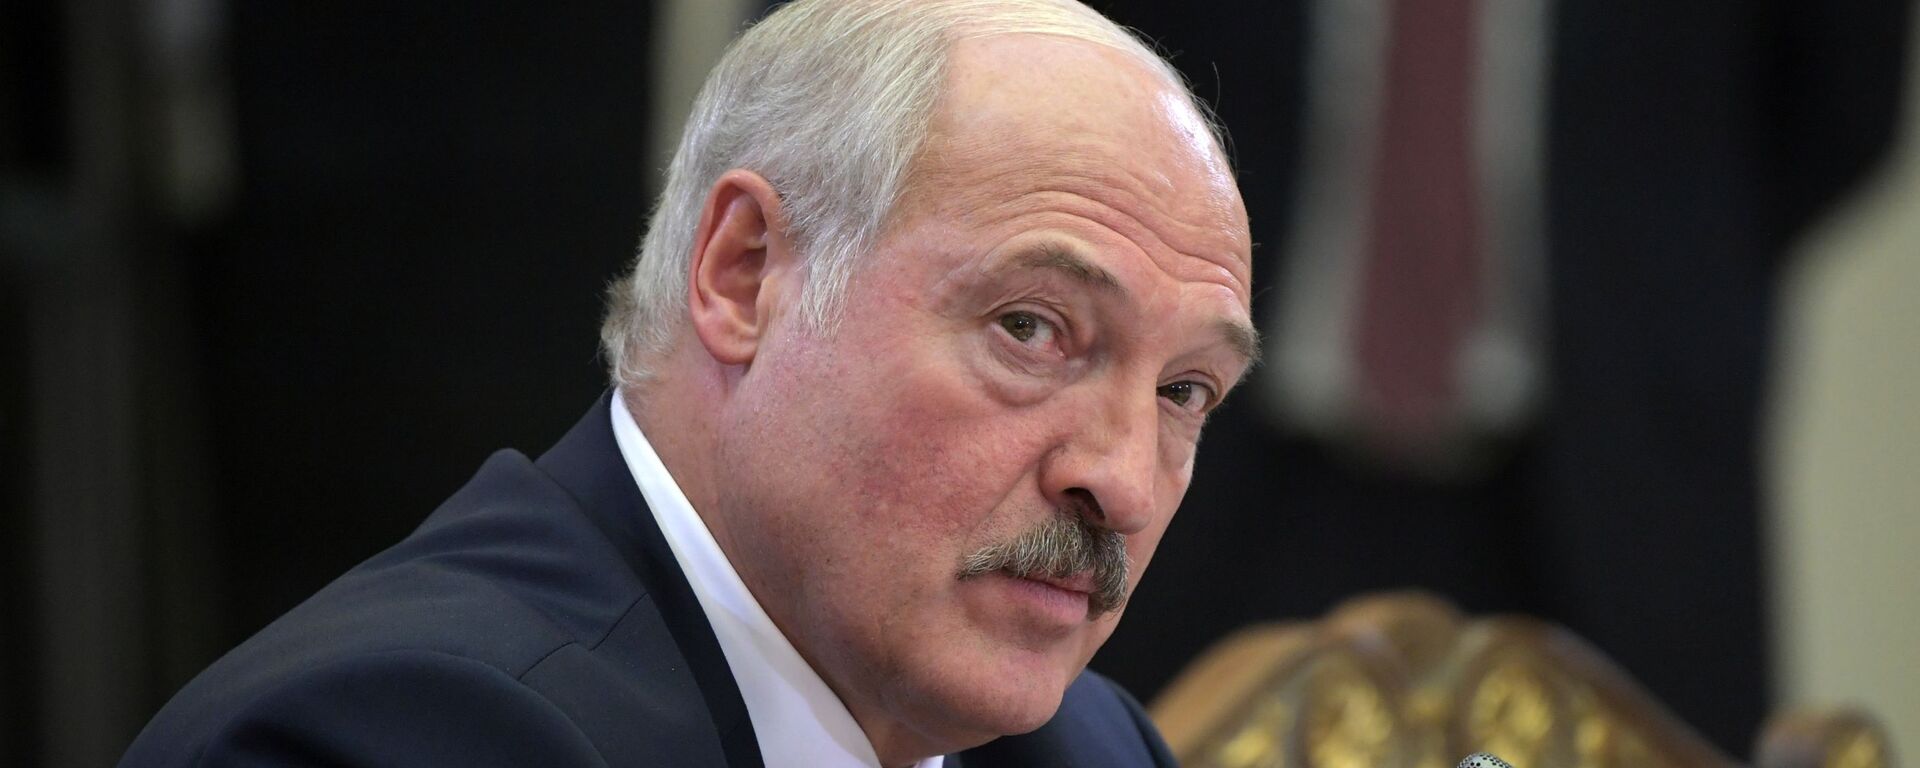 Alexandr Lukashenko, el presidente de Bielorrusia - Sputnik Mundo, 1920, 01.12.2021